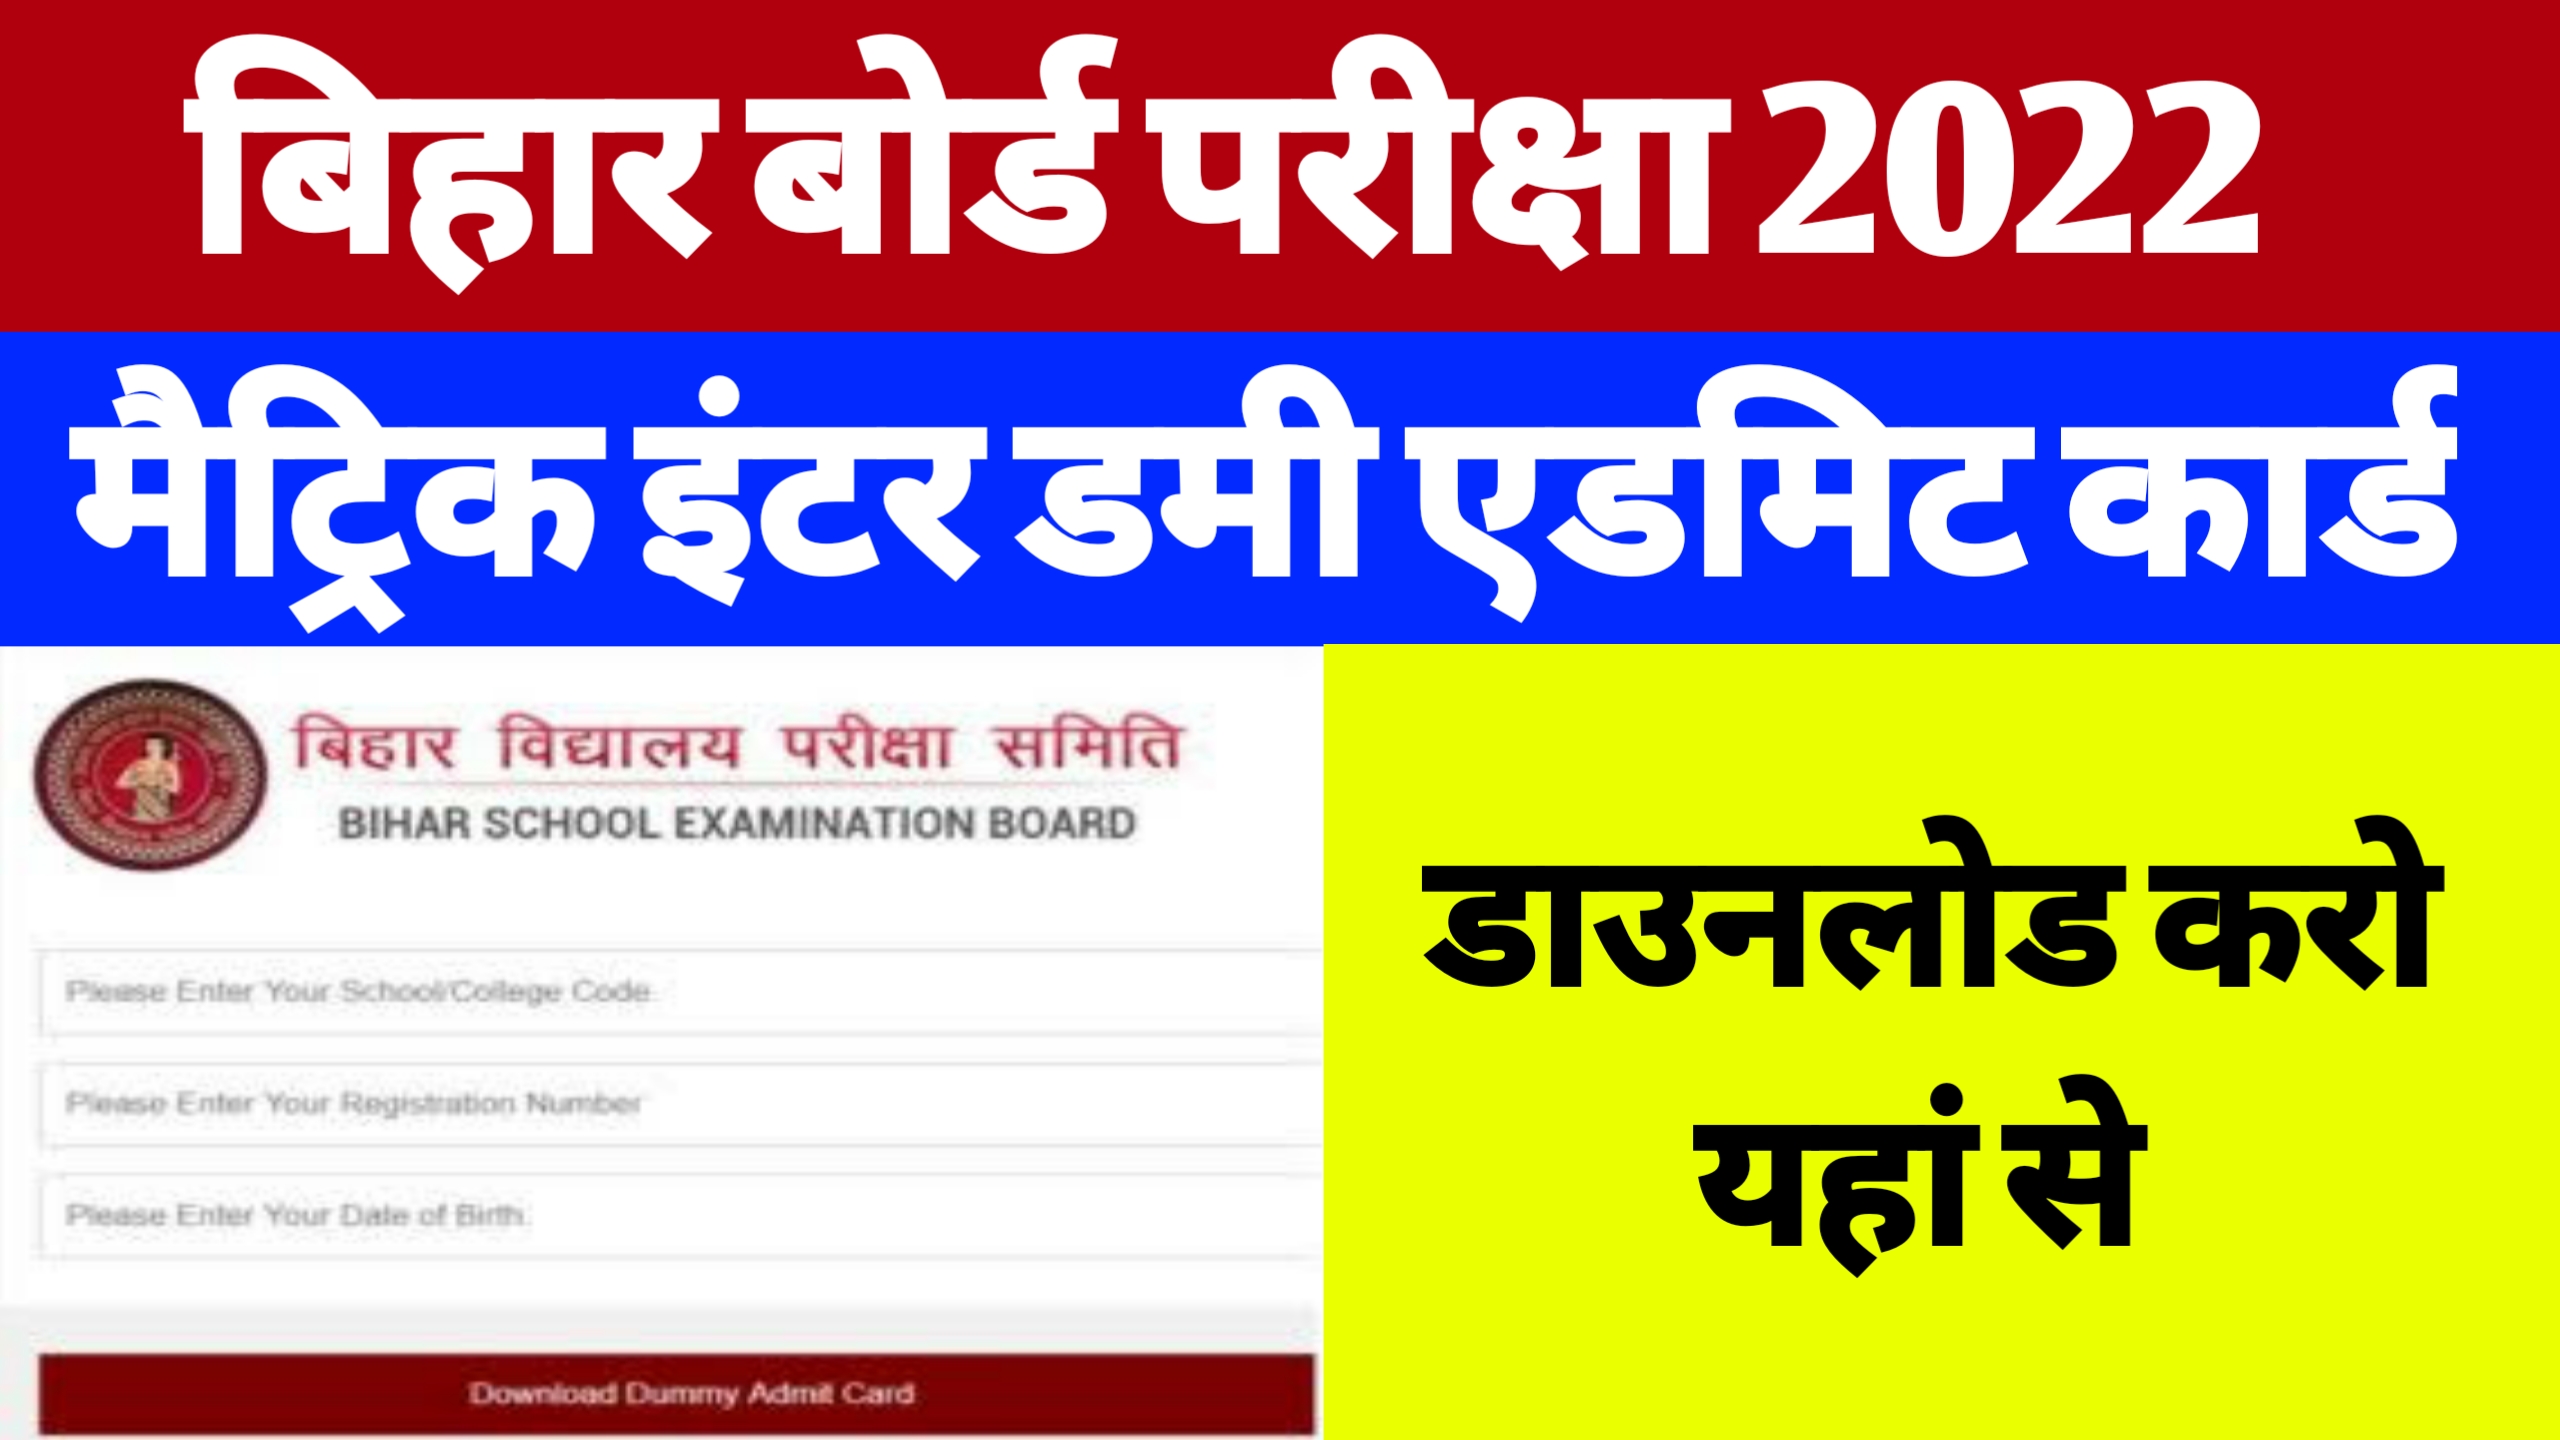 Bihar Board Dummy Admit Card Download 2022 | 10th-12th Dummy Admit Card Download Kaise Kare